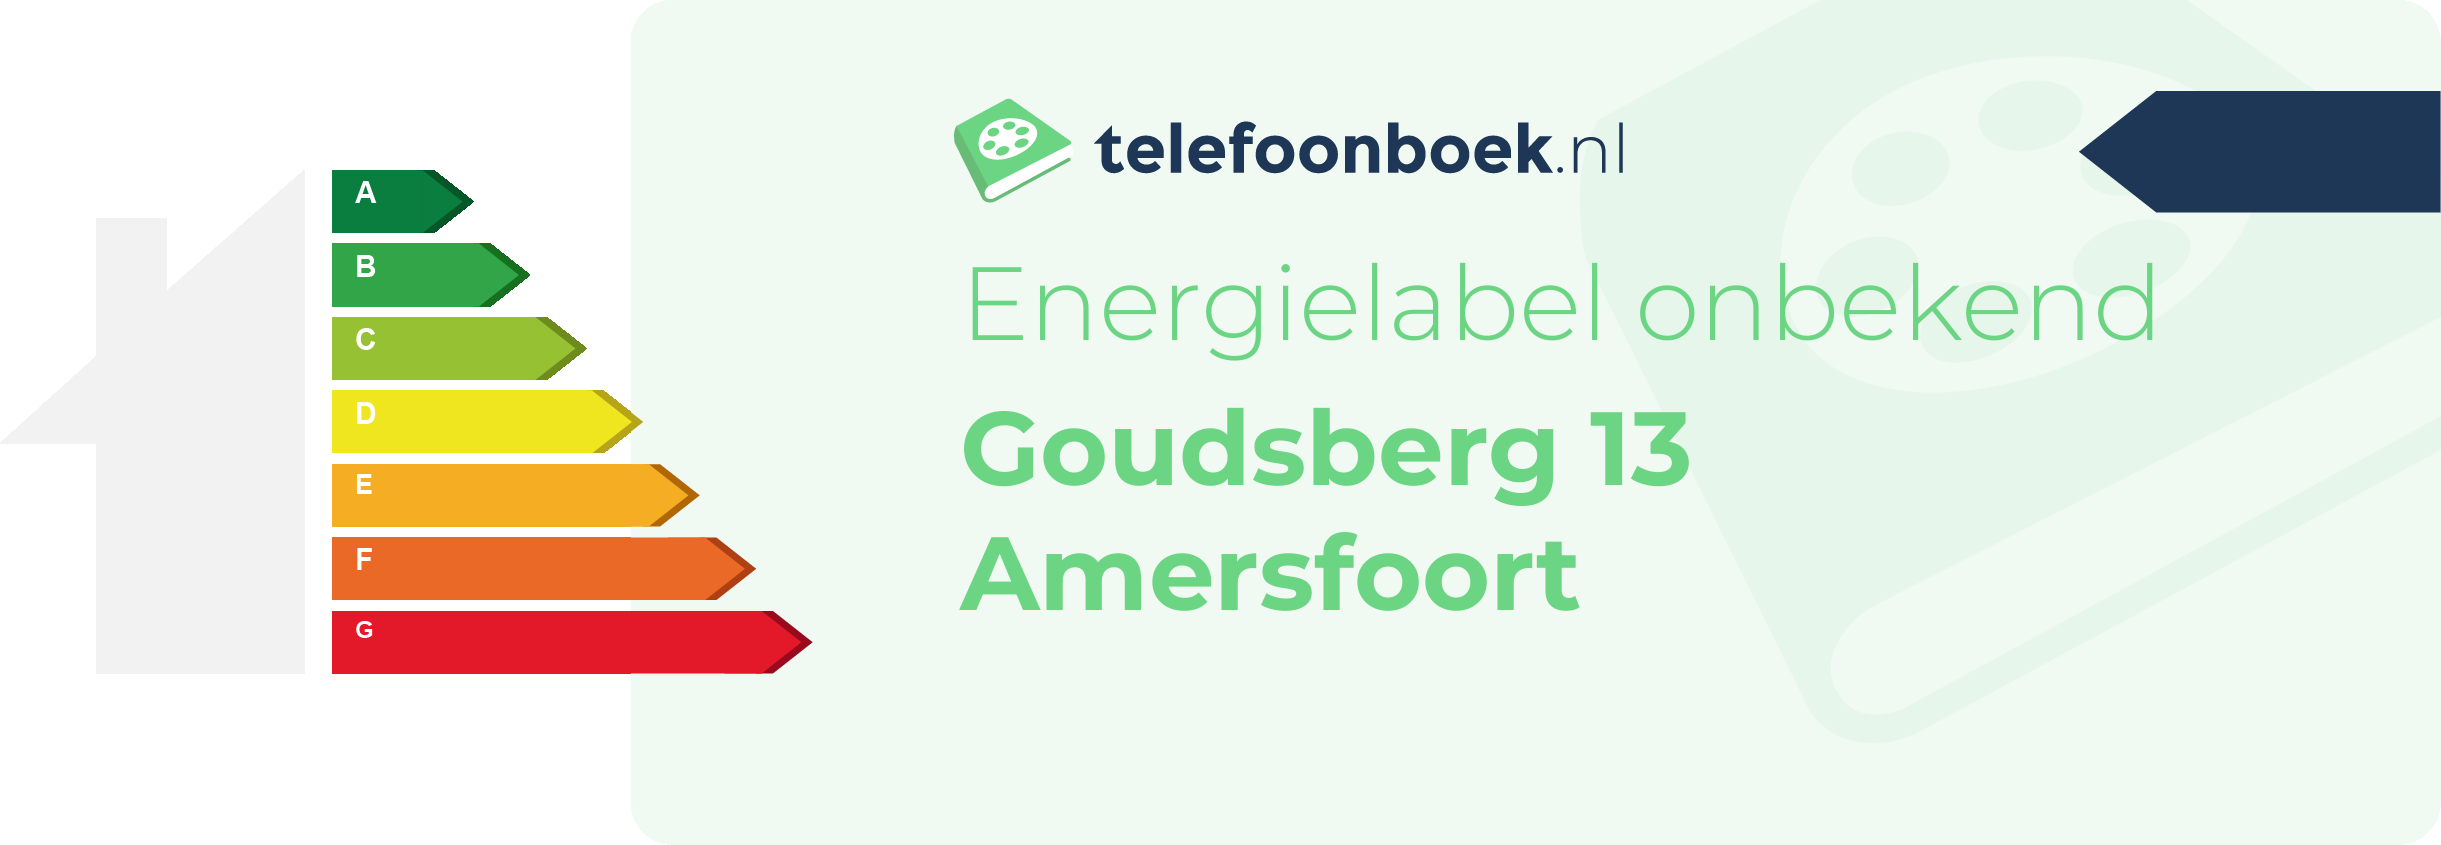 Energielabel Goudsberg 13 Amersfoort